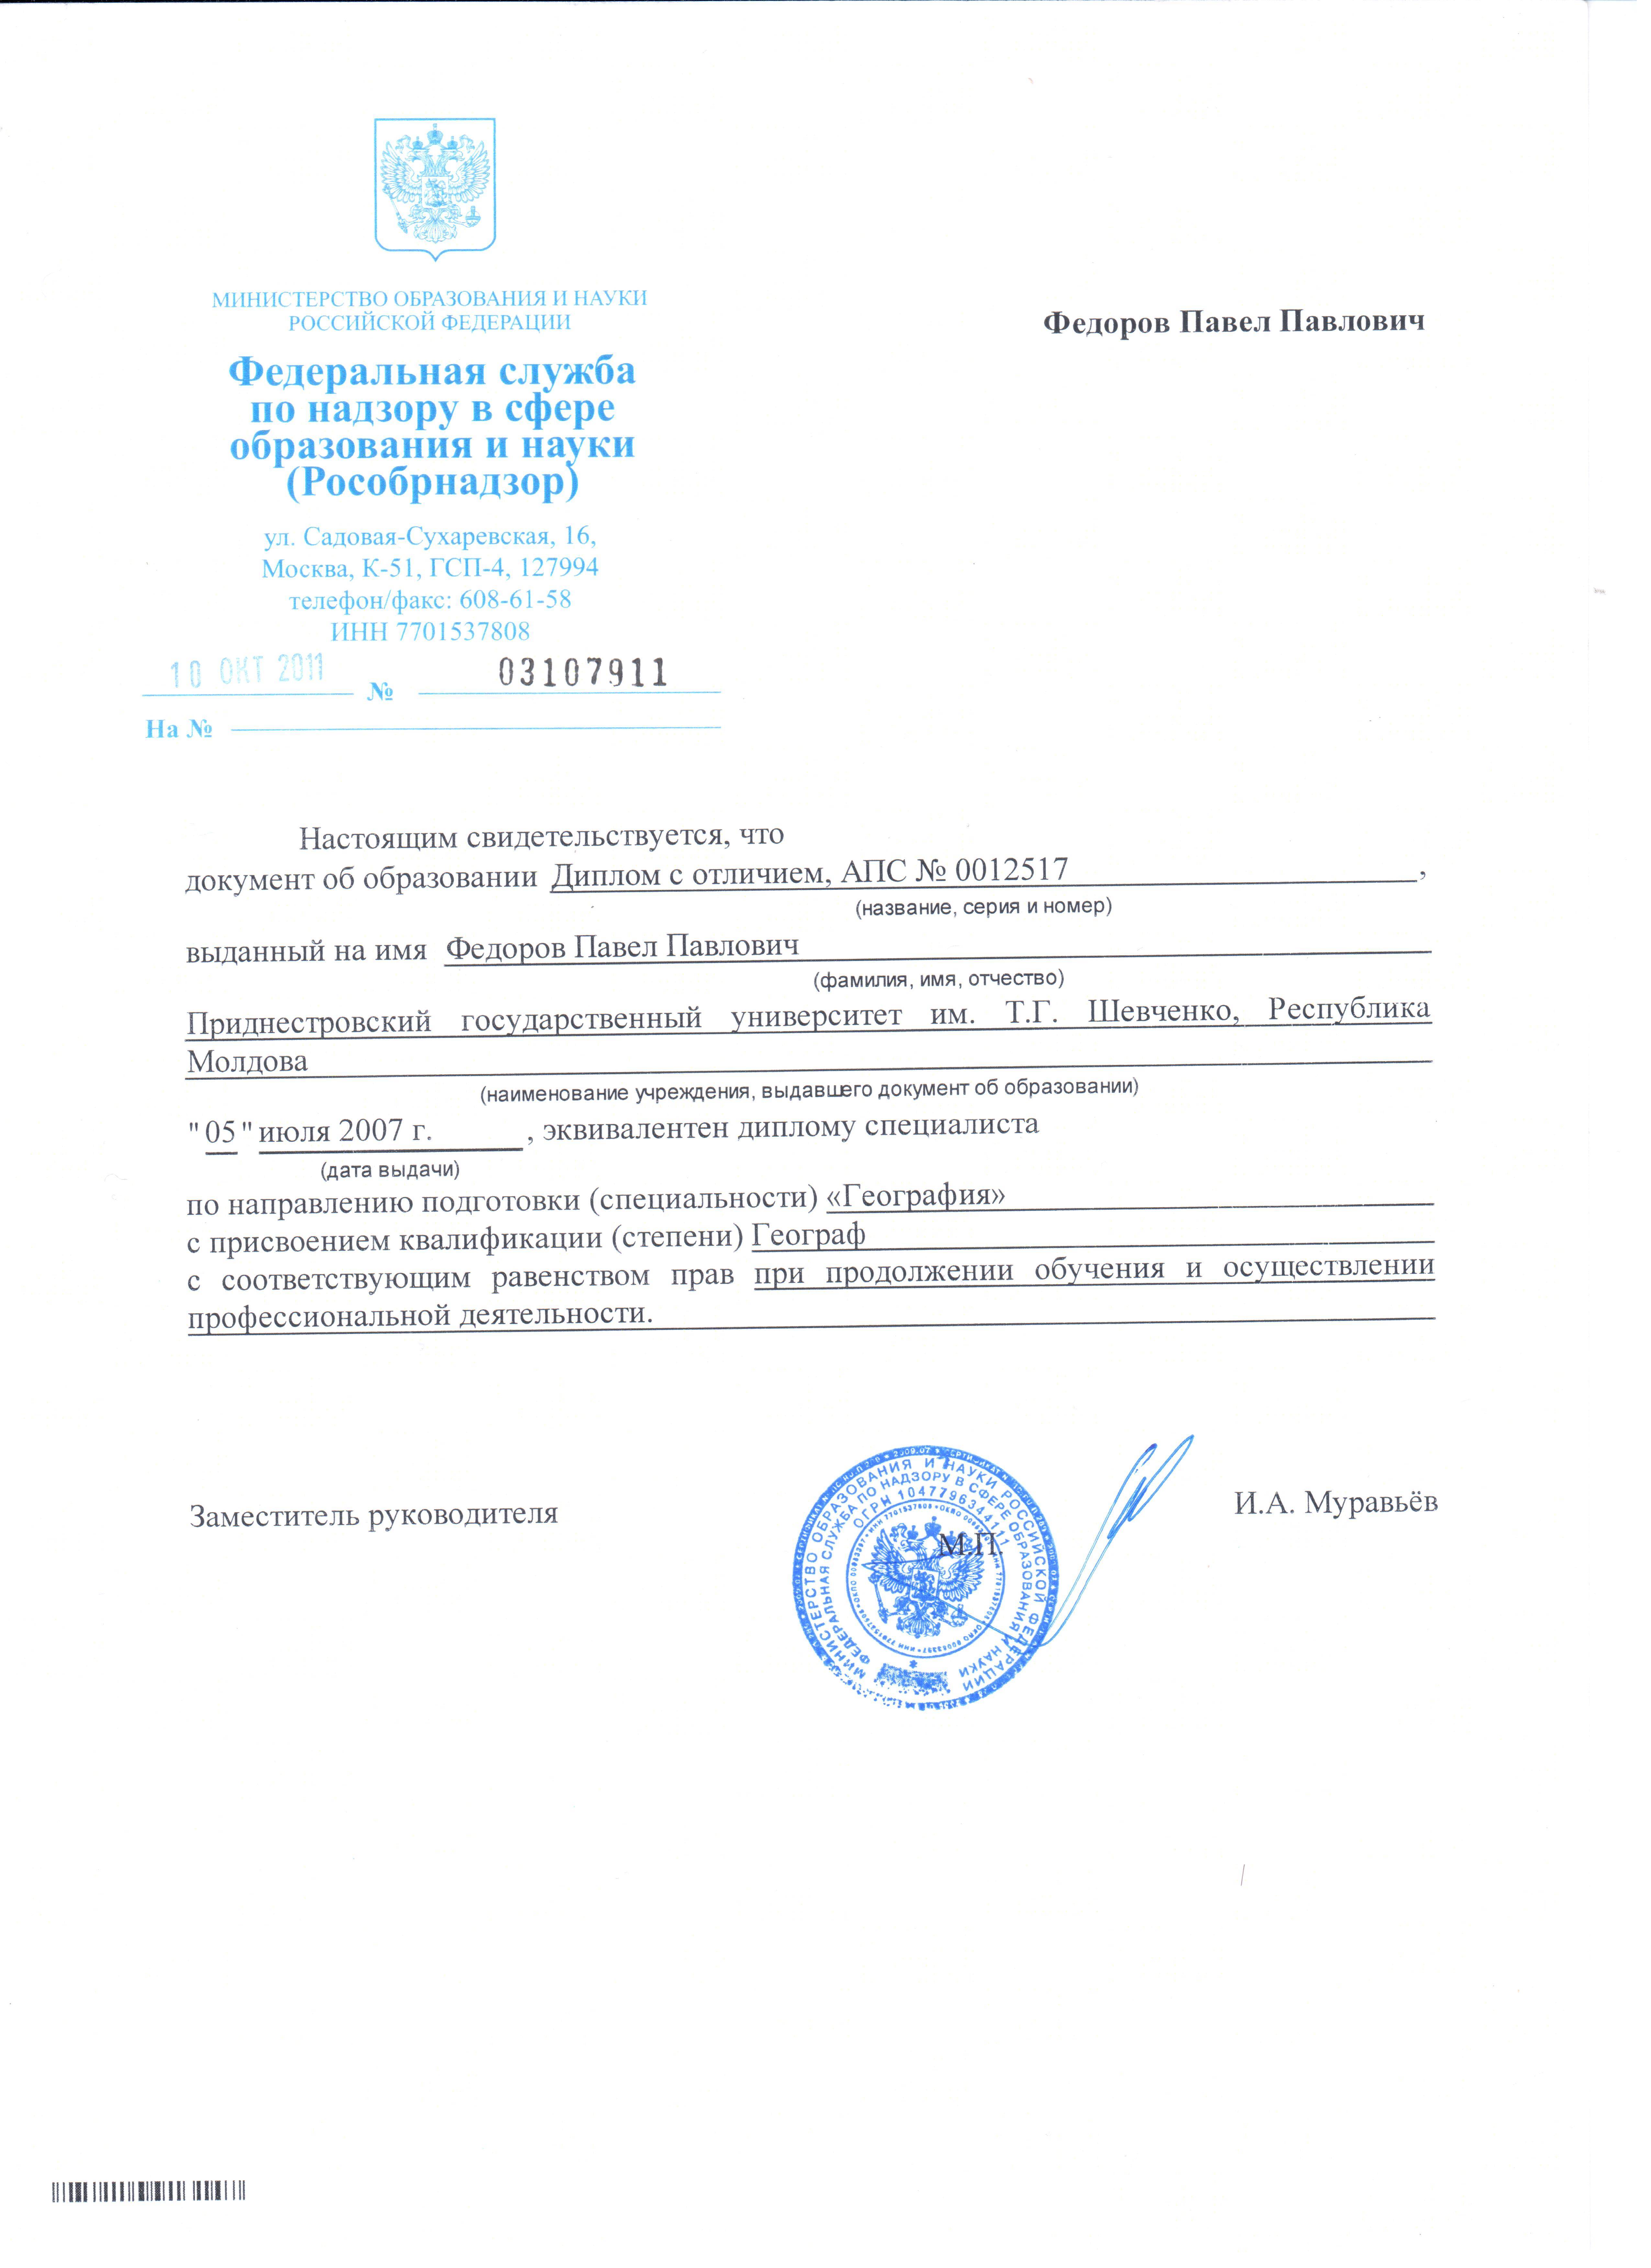 Нострификация ⚠️ диплома в москве и россии: что такое, когда нужна, как происходит